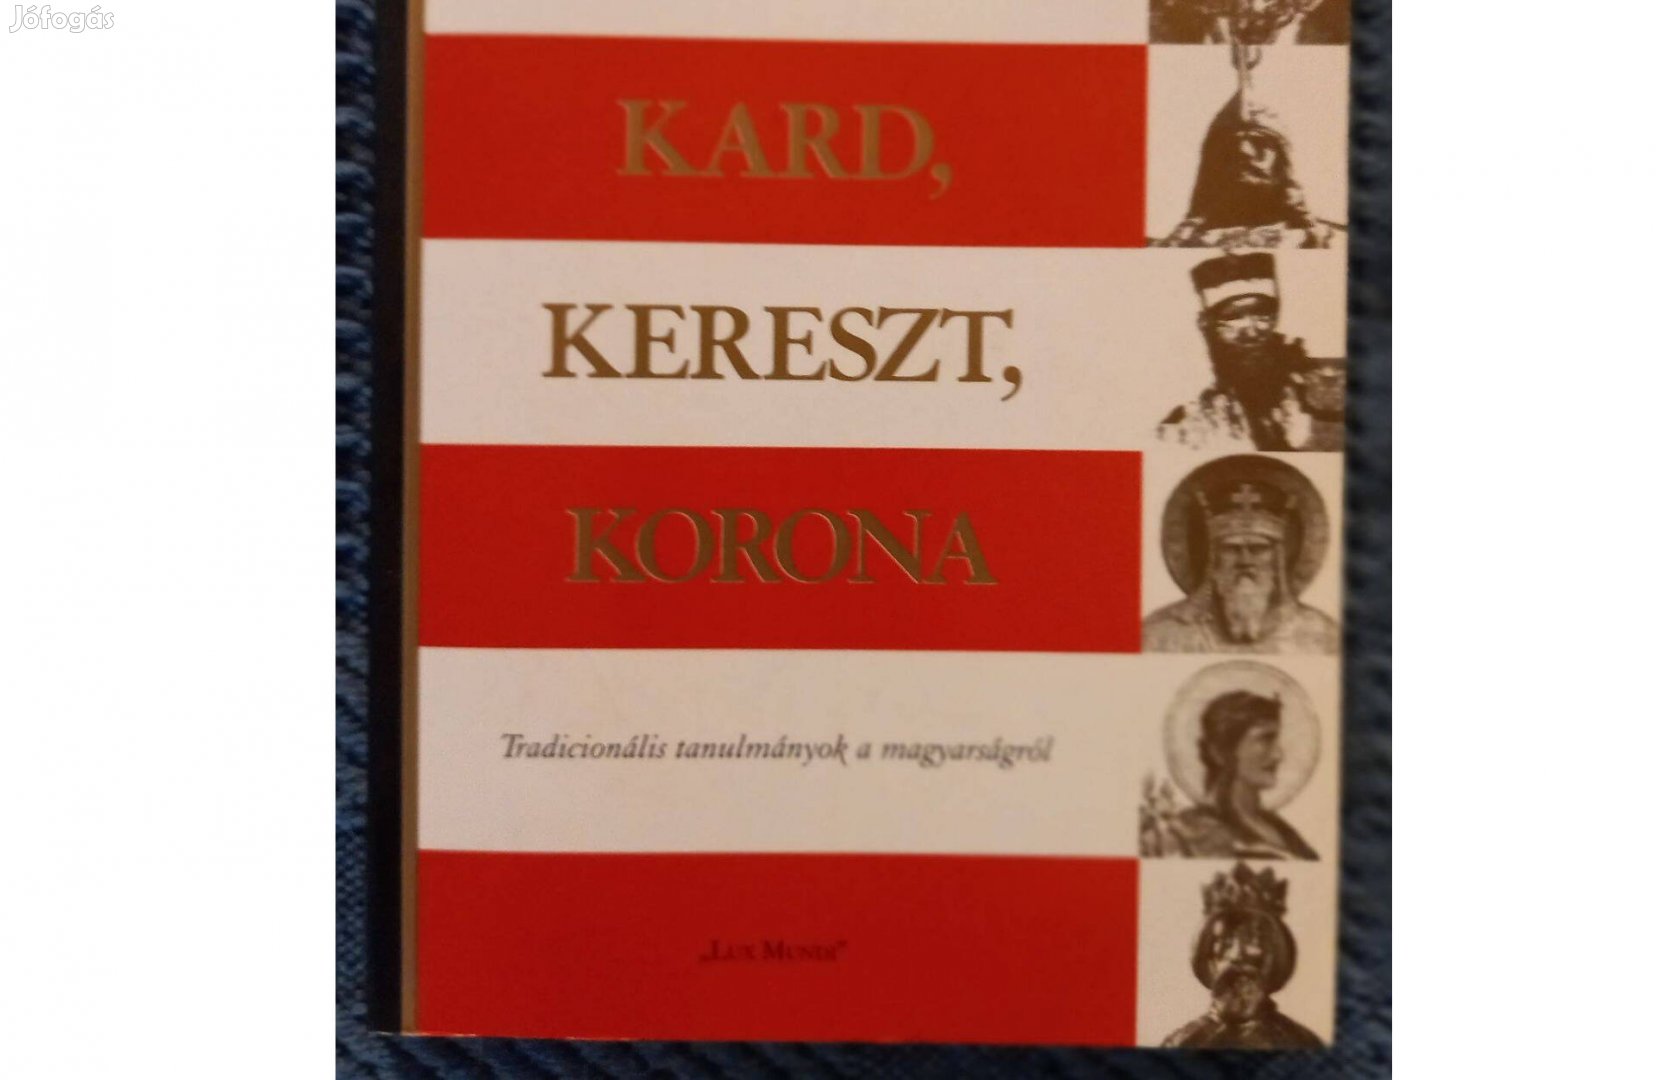 Baranyi - Horváth - László: Kard, kereszt, korona című könyv eladó